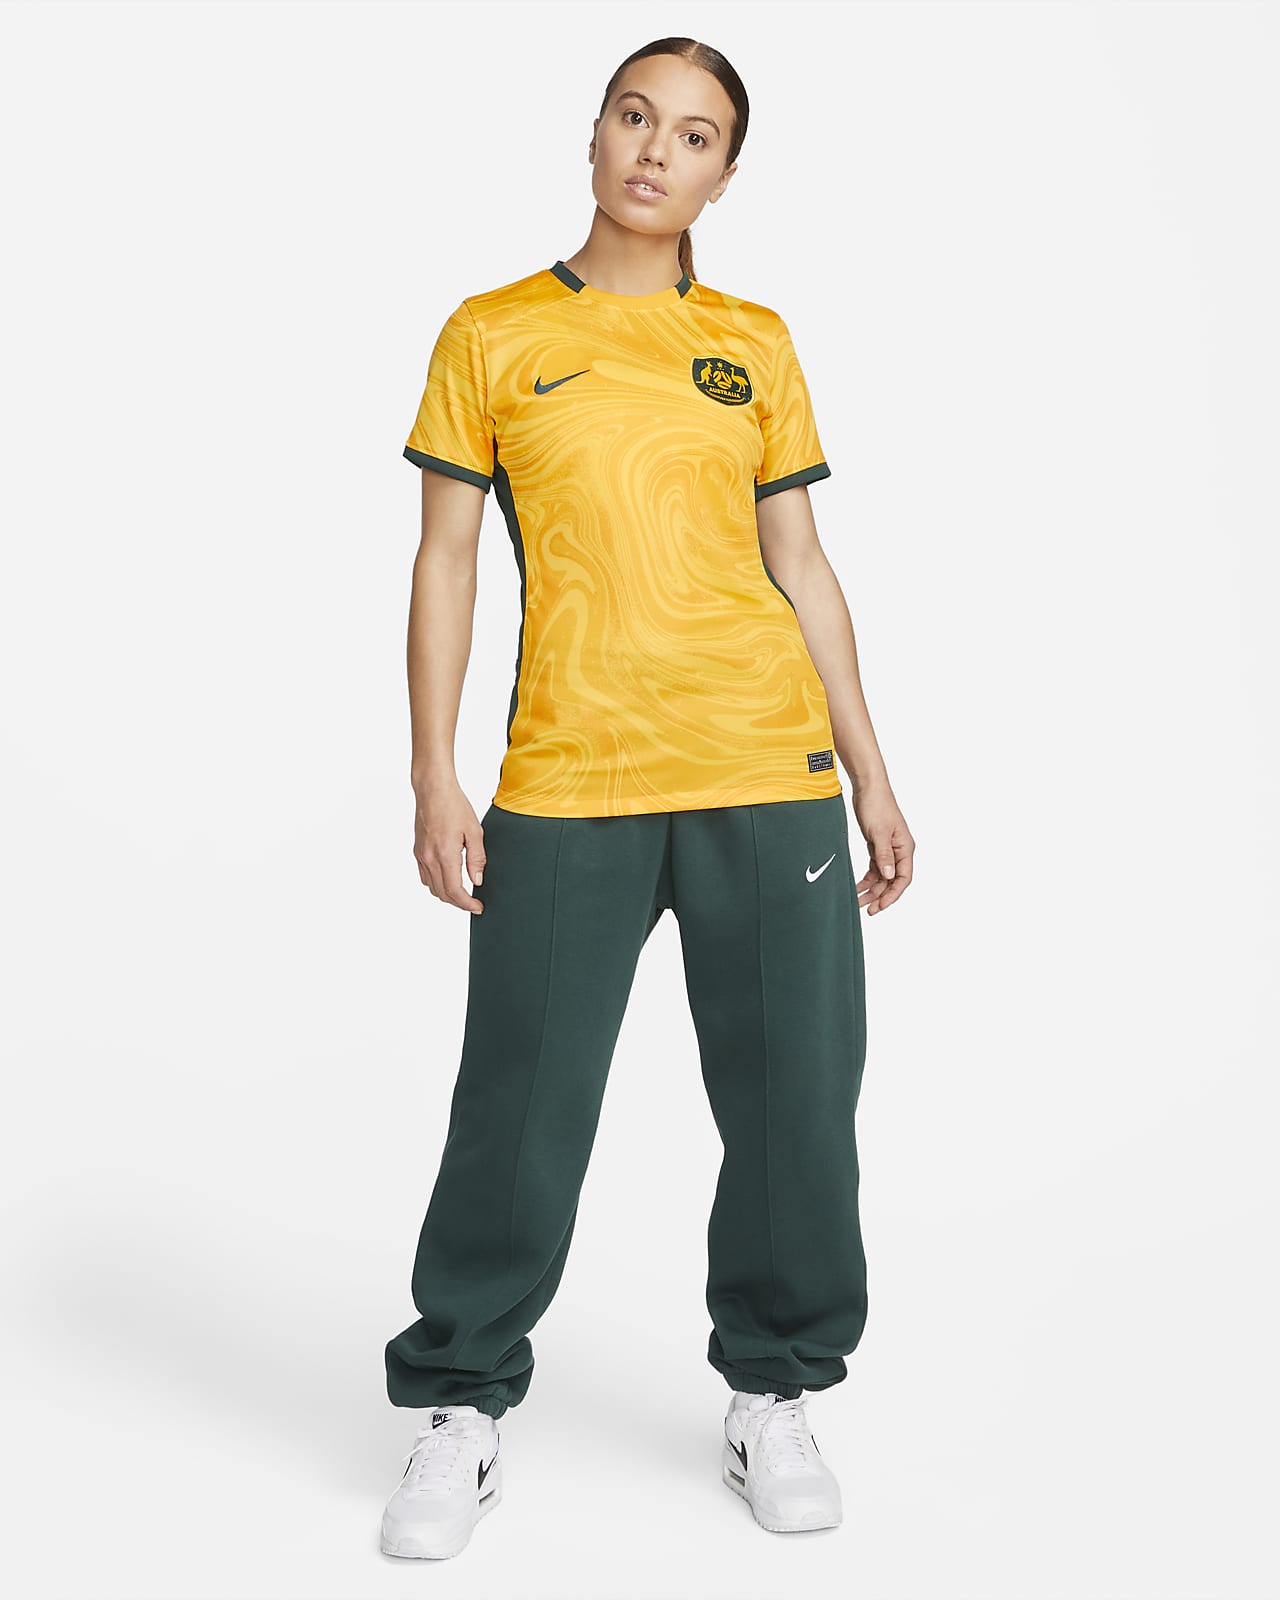 australian women's soccer jersey